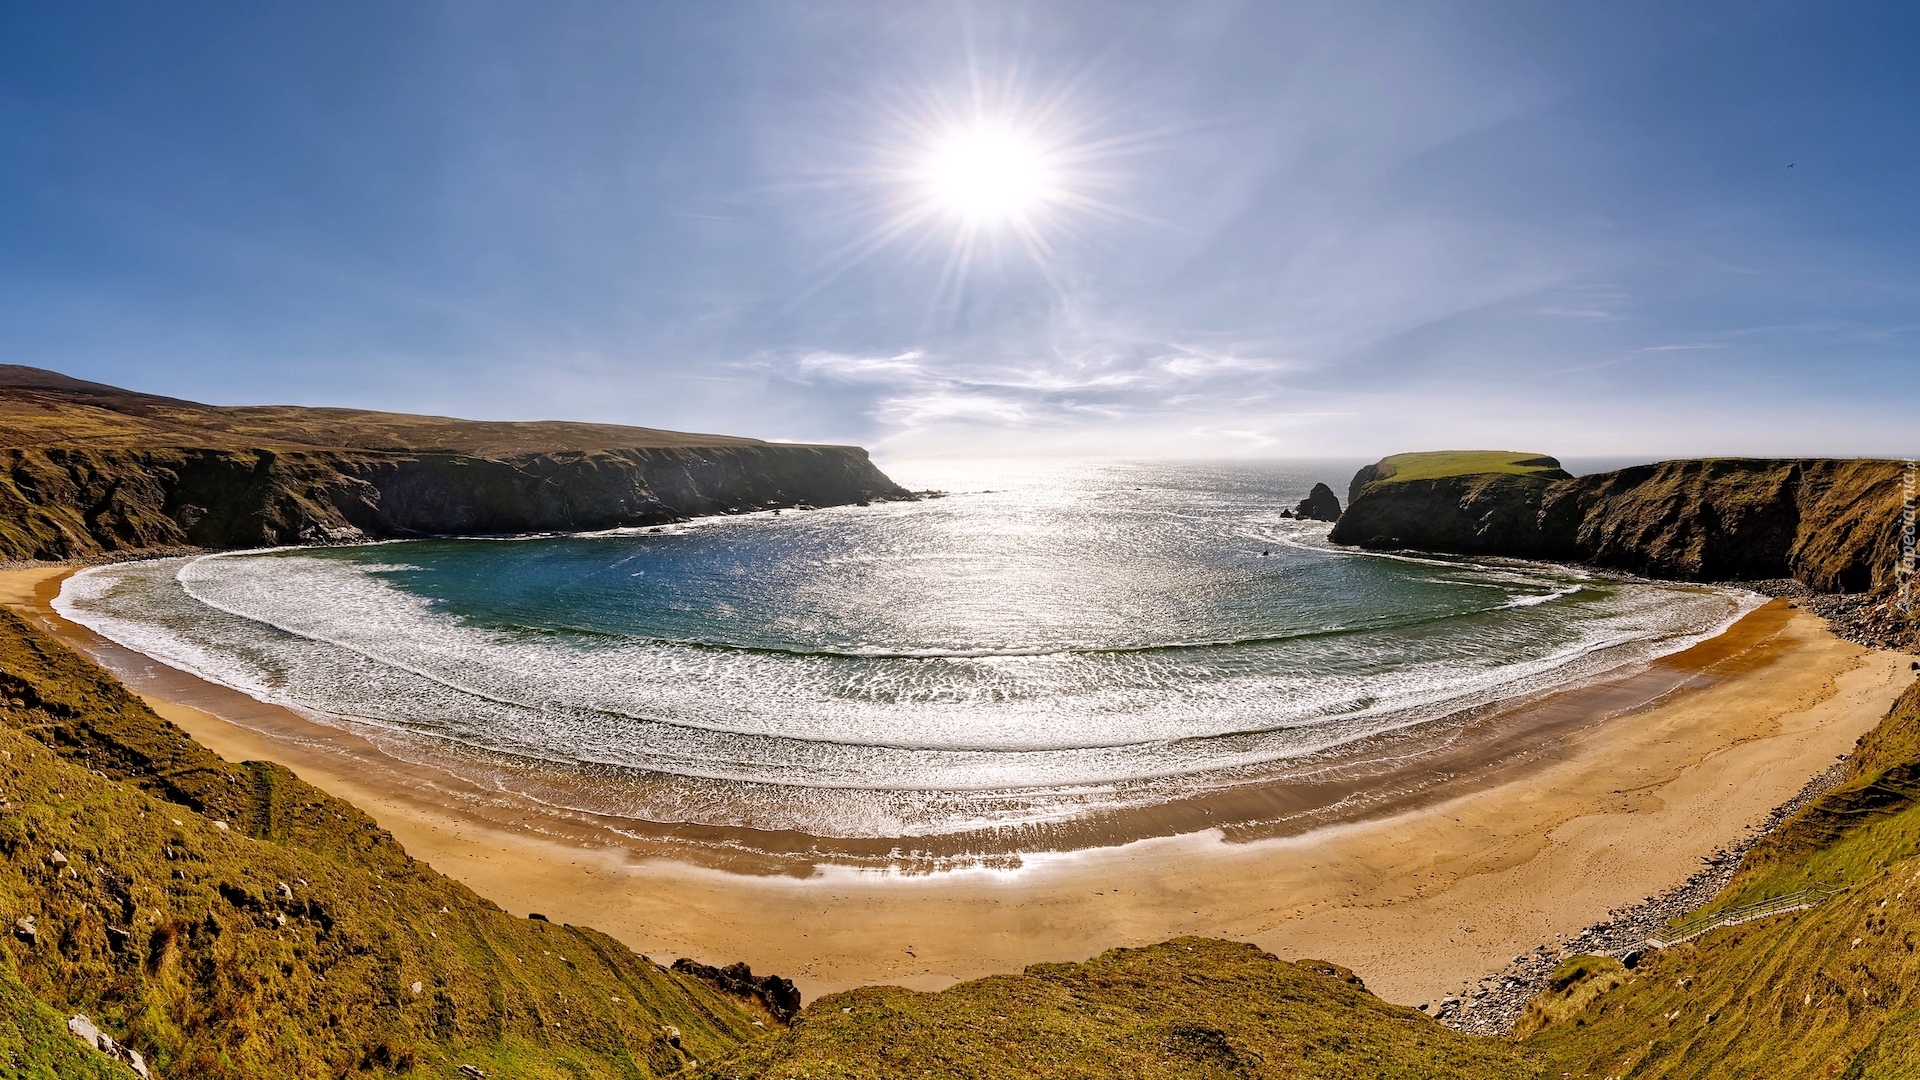 Morze, Zatoka, Skały, Plaża, Silver Strand Beach, Promienie słońca, Malin Beg, Hrabstwo Donegal, Irlandia